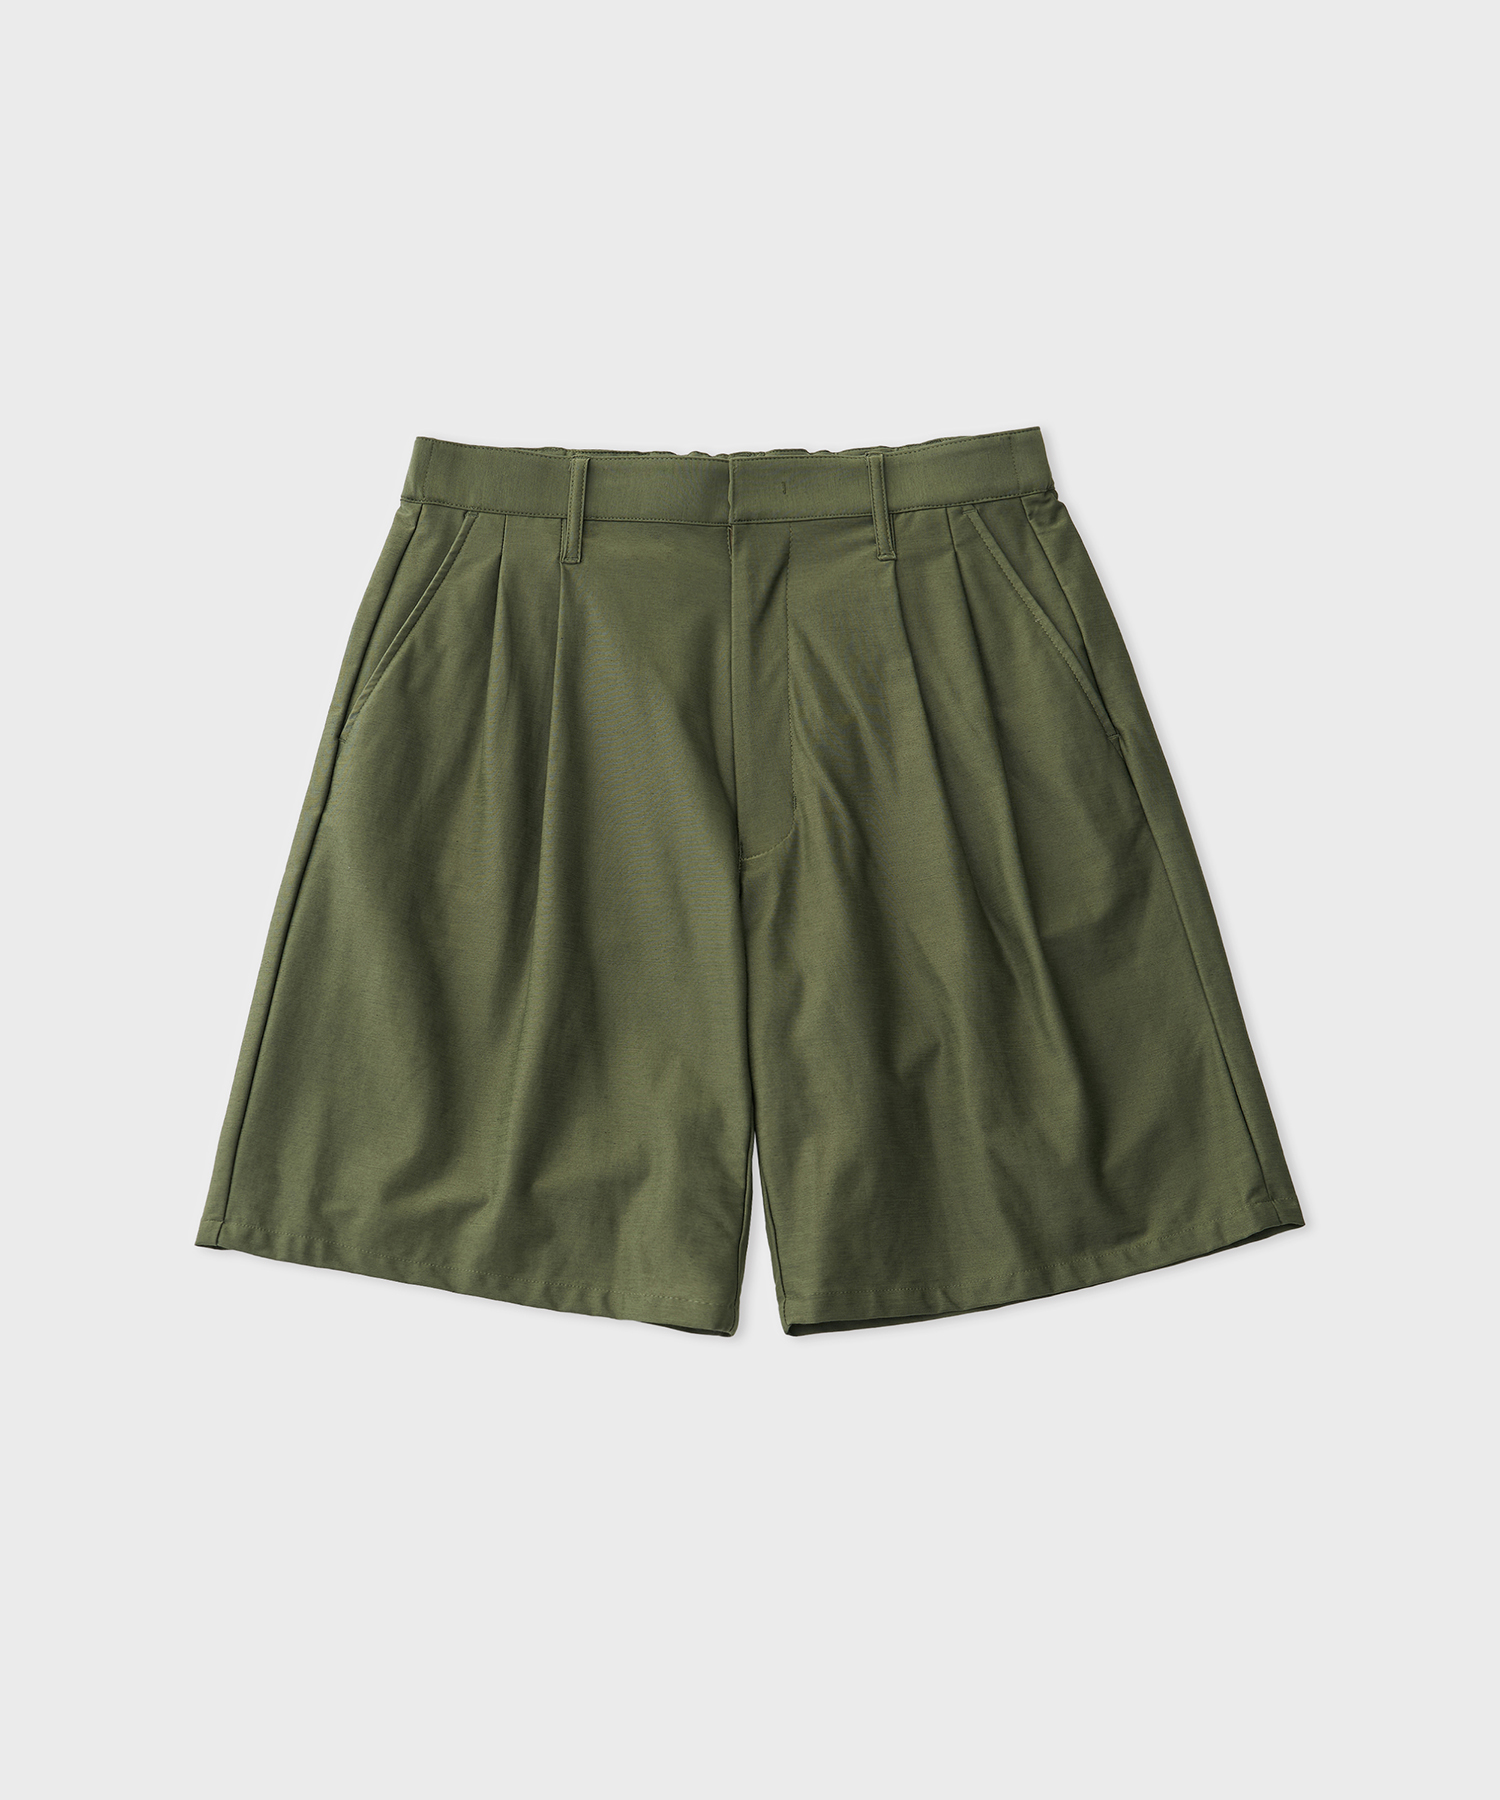 Typewriter High Gauge Jersey Tuck shorts (Military Green)